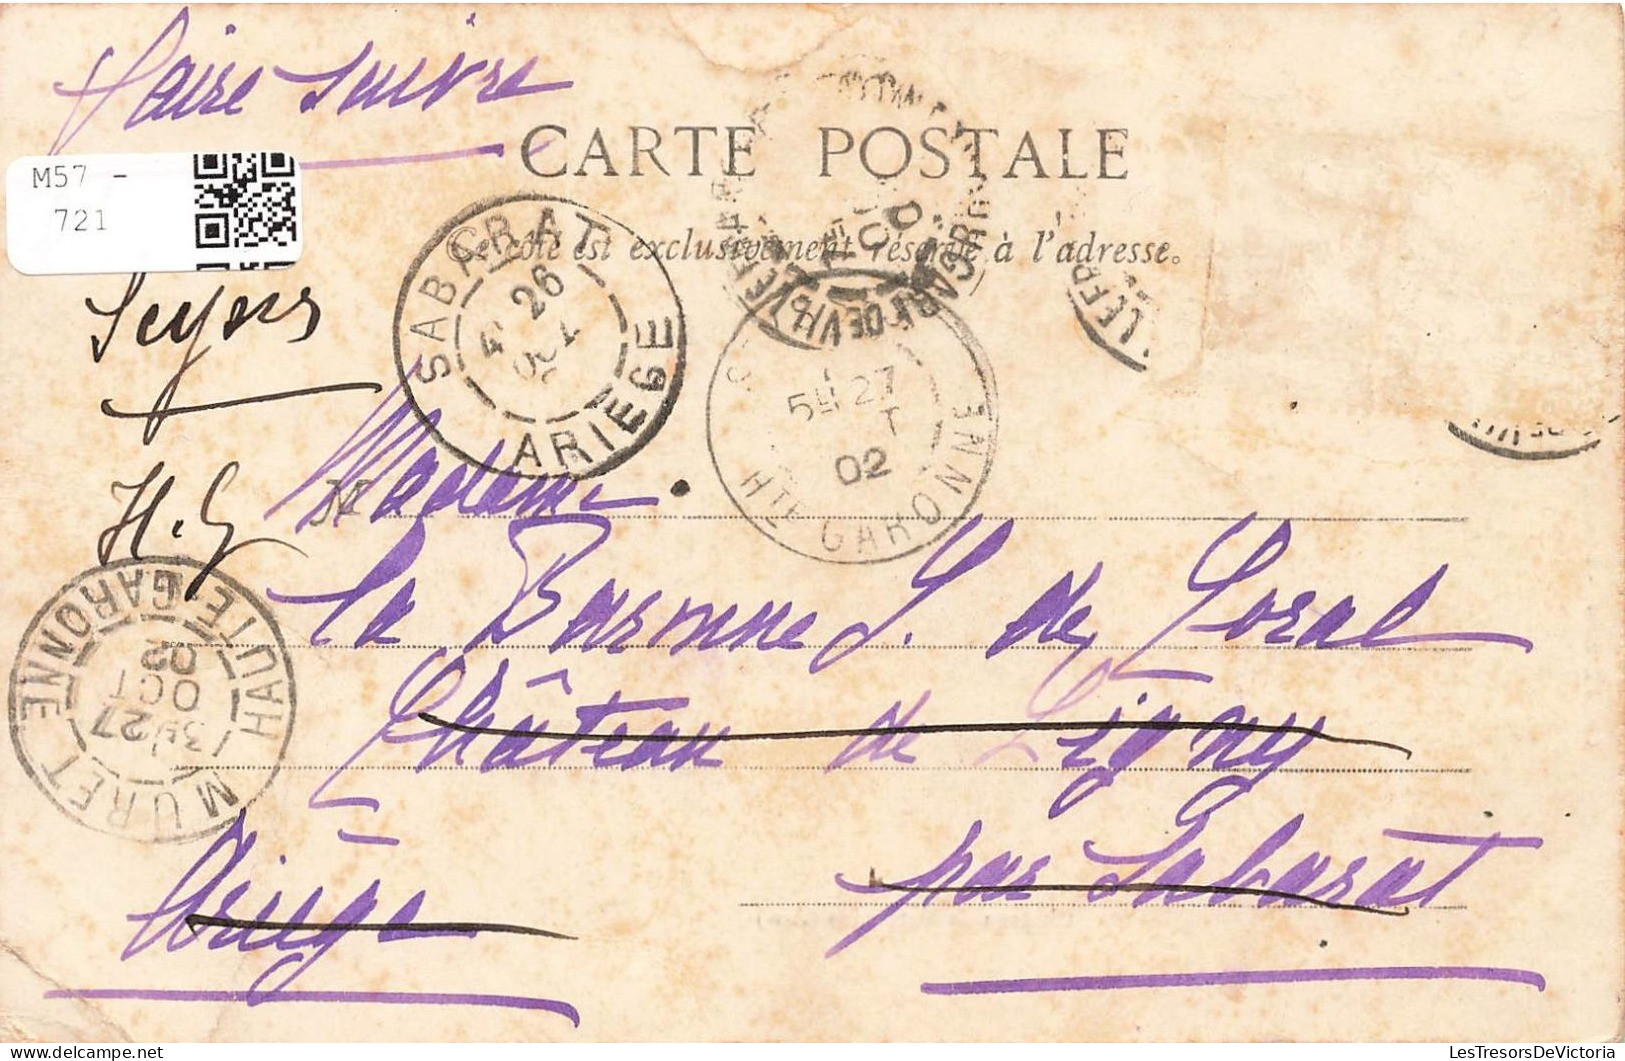 FRANCE - Francheleins - Château De Vataneins - Carte Postale Ancienne - Non Classificati